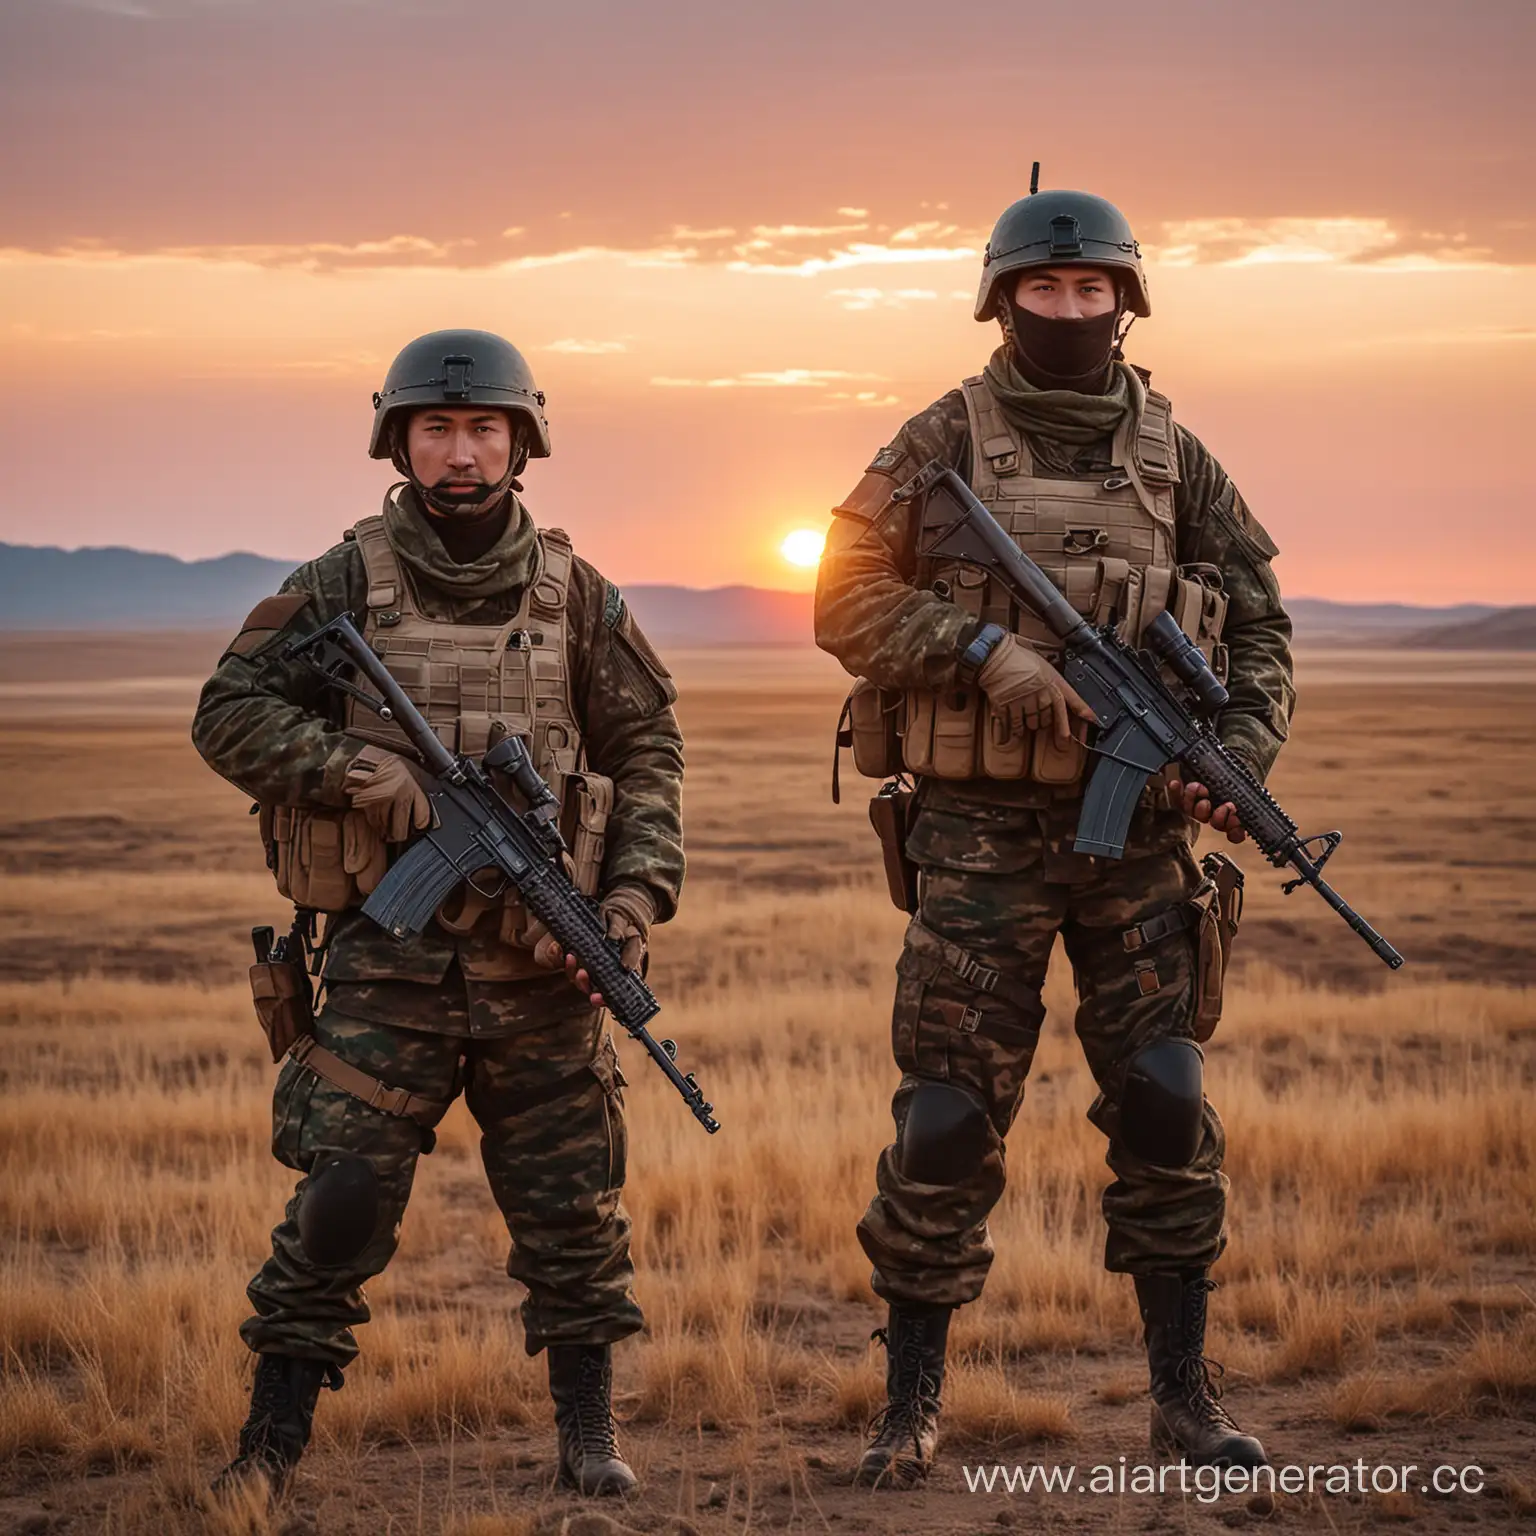 казахстанский спецназ в каске и с автоматом на фоне степи, красивый закат